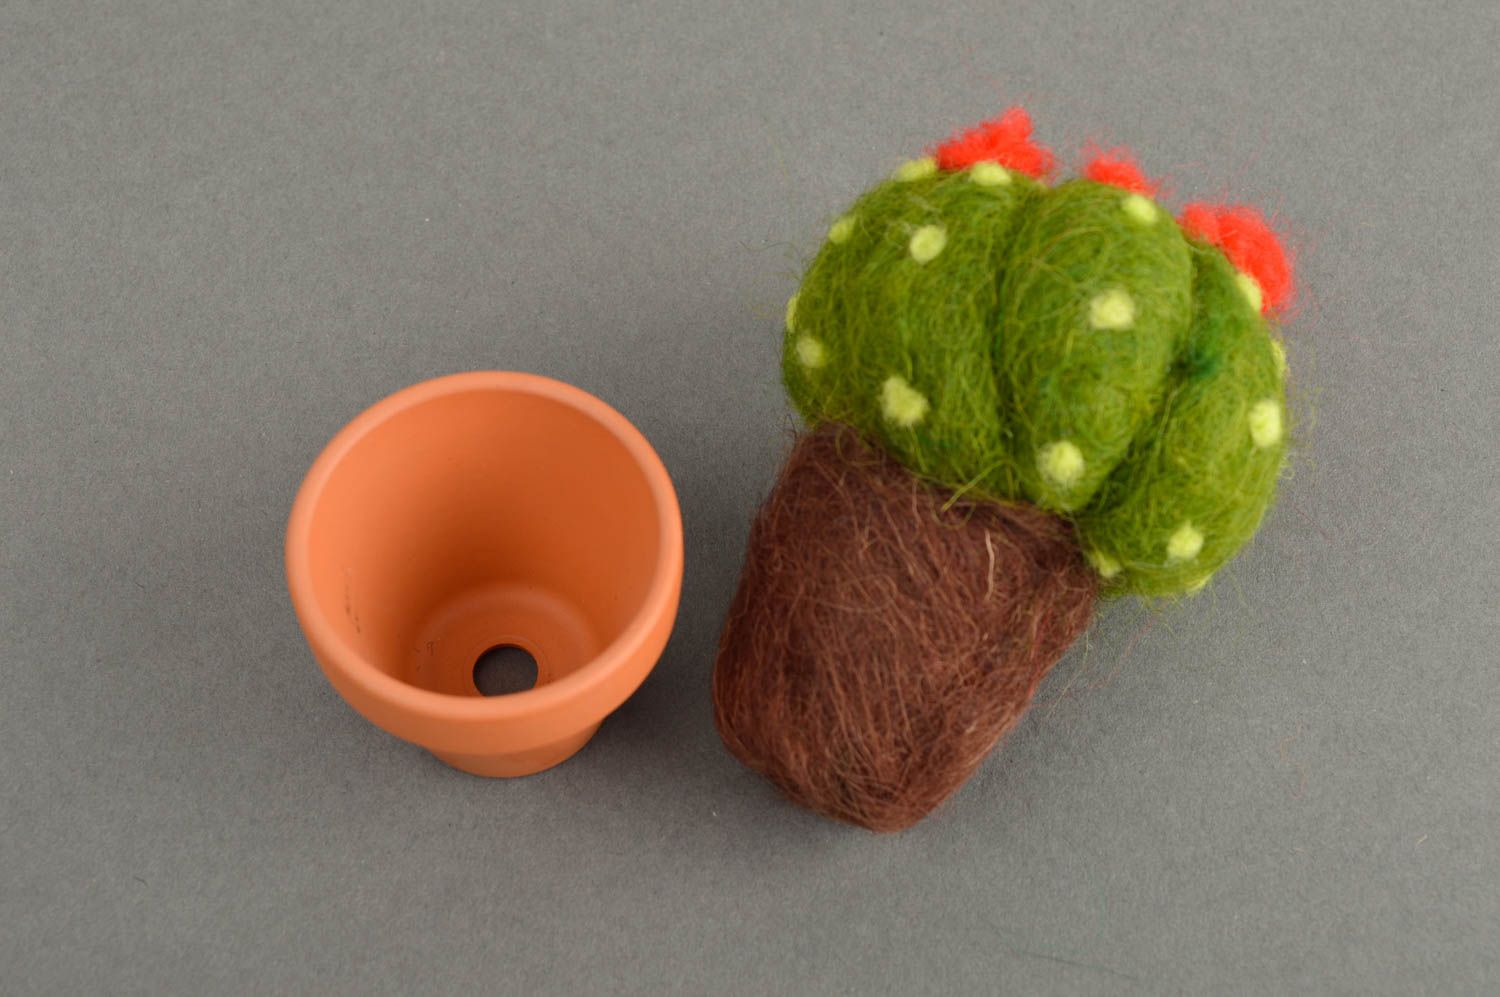 Plüsch Kaktus handmade Spielzeug aus Stoff kreative Deko aus Naturmaterialien foto 5